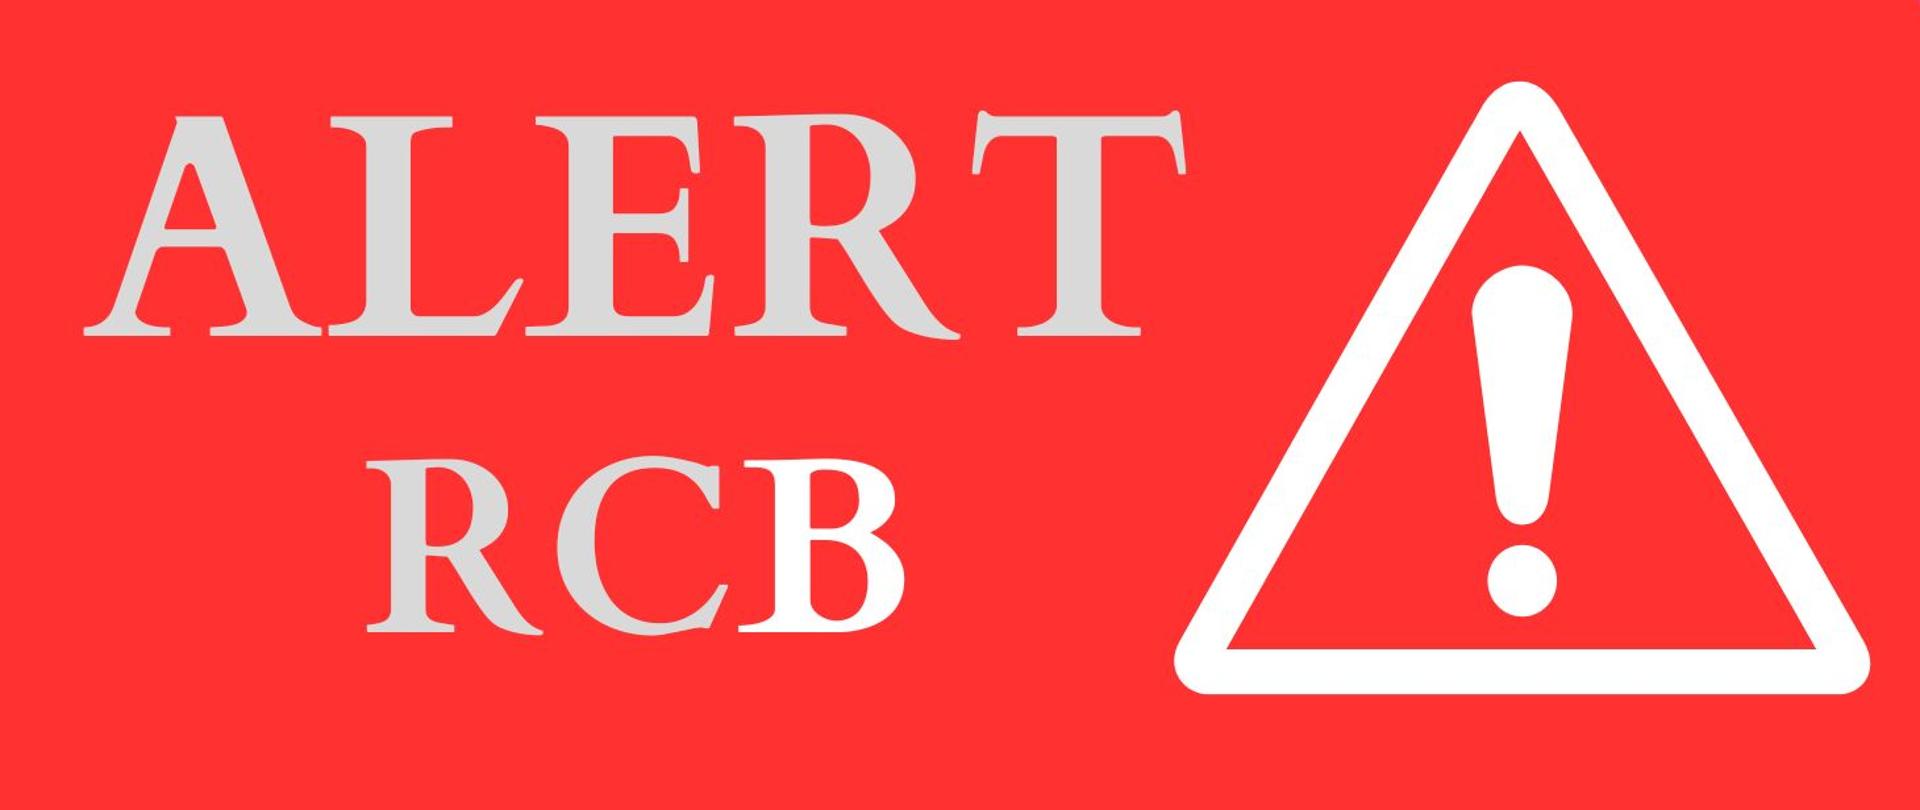 plakat w kolorze czerwonym, po lewej stronie drukowanymi szarymi literami słowo alert rcb, po prawej stronie grafika biały trójkąt w środku z wykrzyknikiem